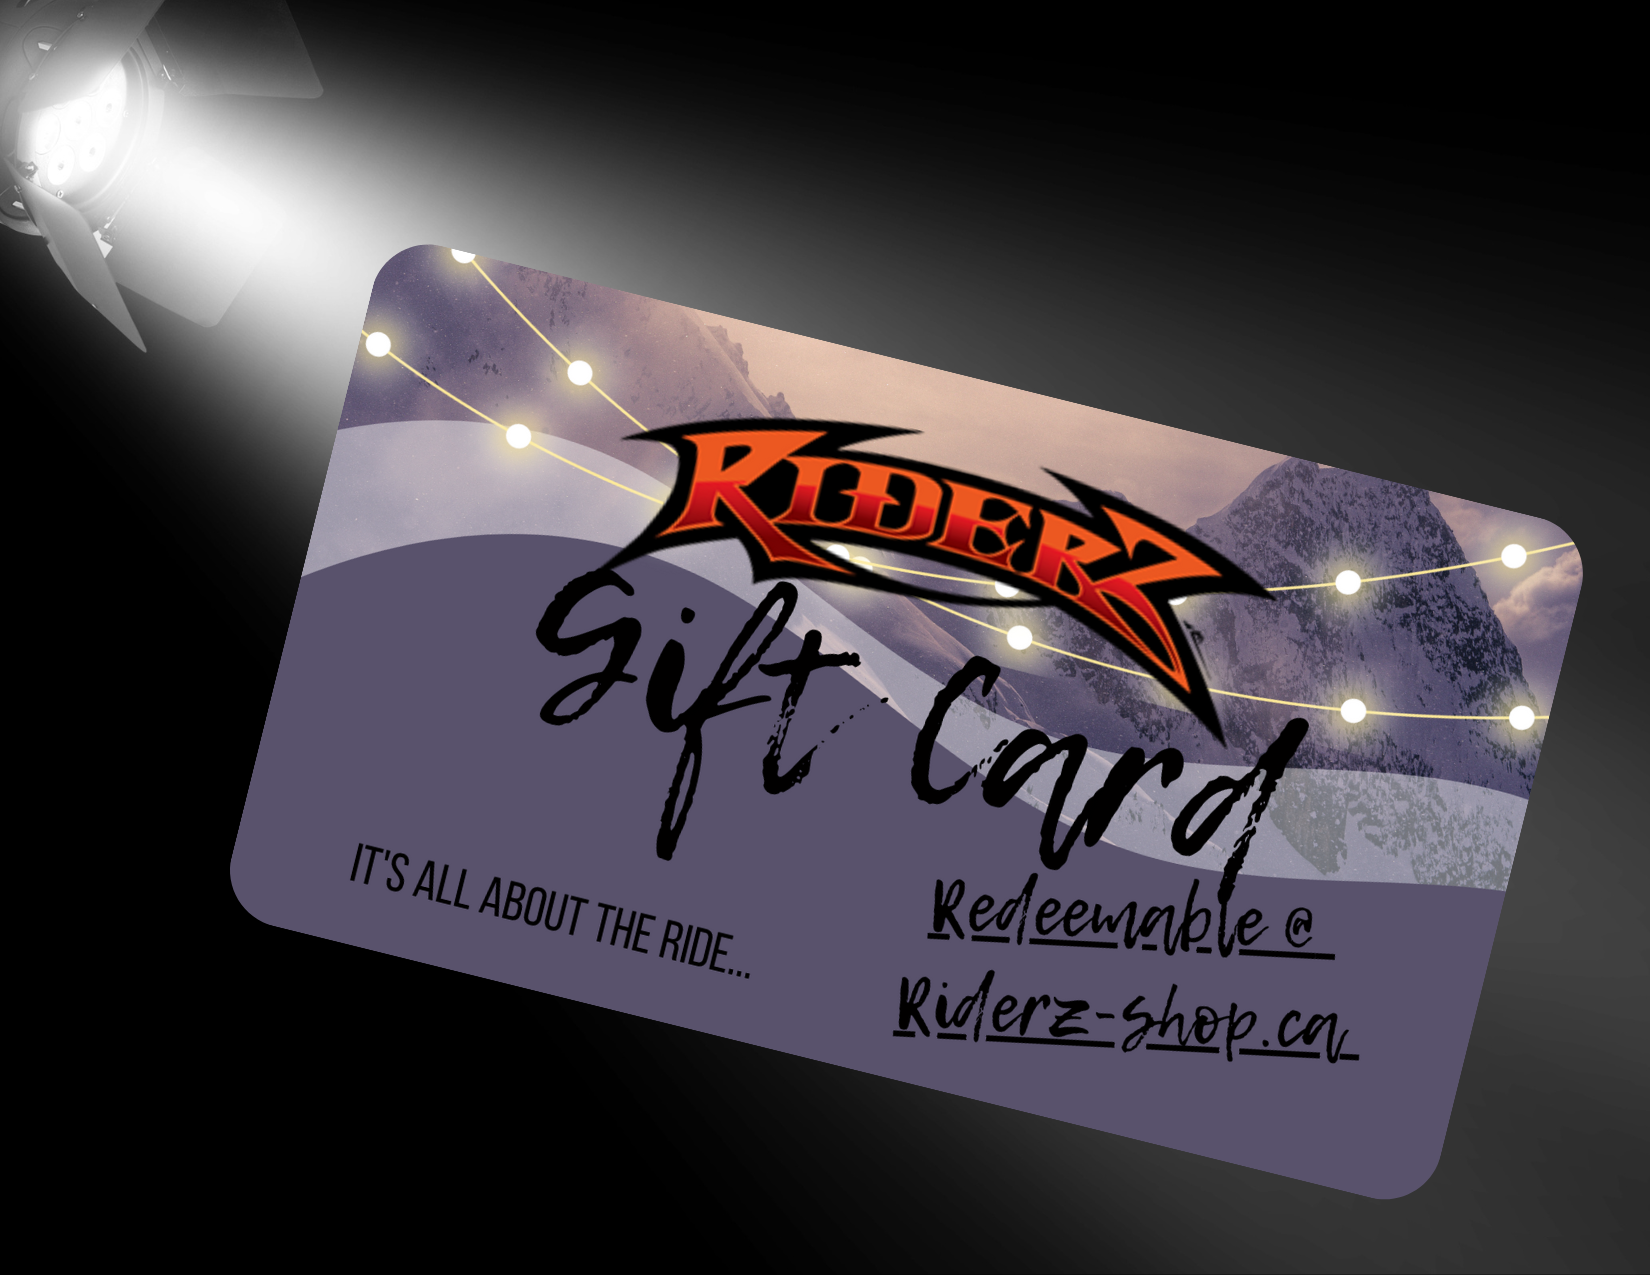 RIDERZ-SHOP GIFT CARD – RIDERZ.SHOP